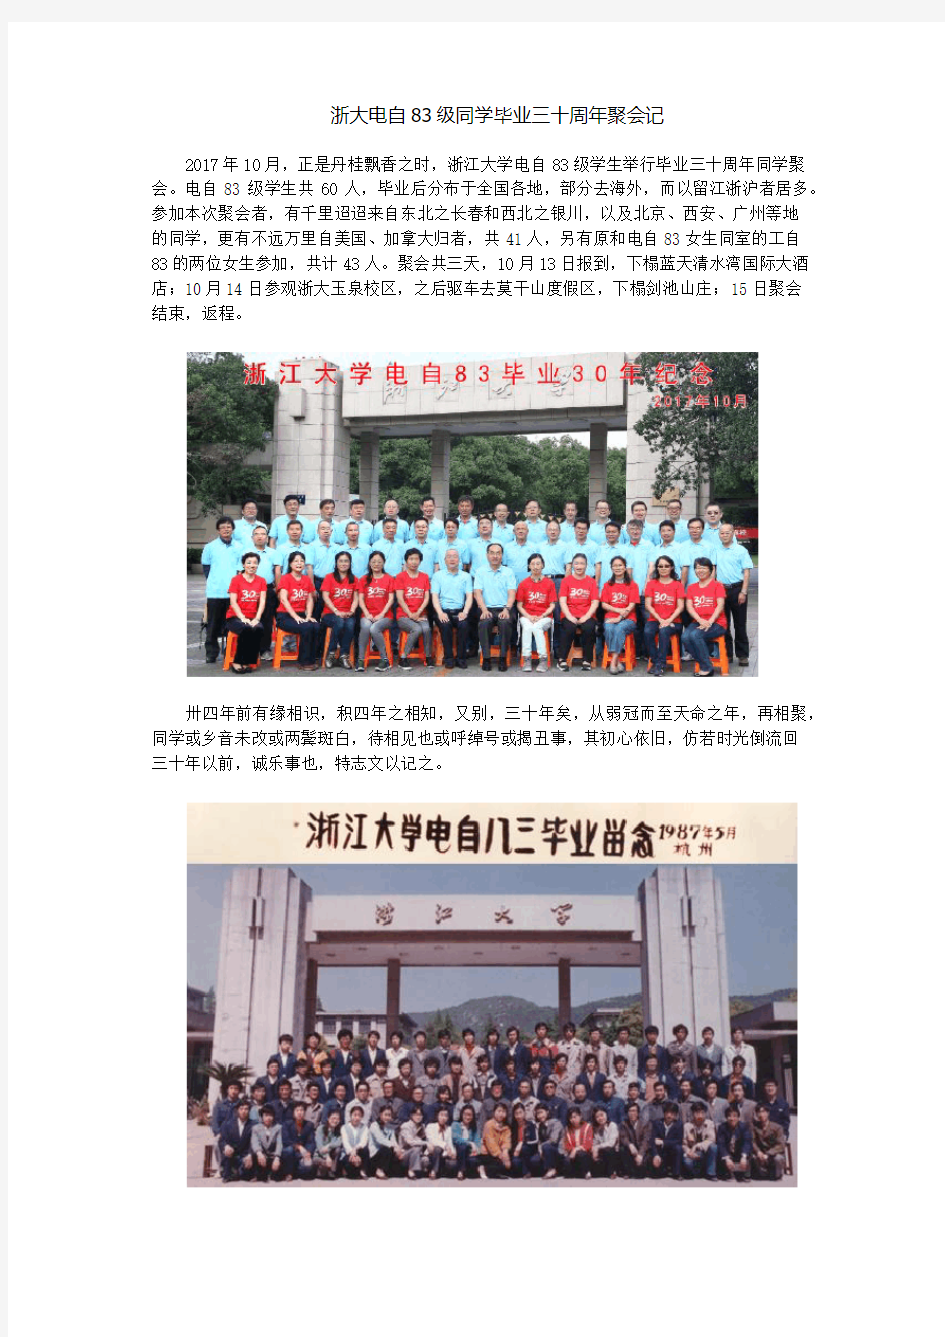 浙大电自83级同学毕业三十周年聚会记-浙江大学电气工程学院